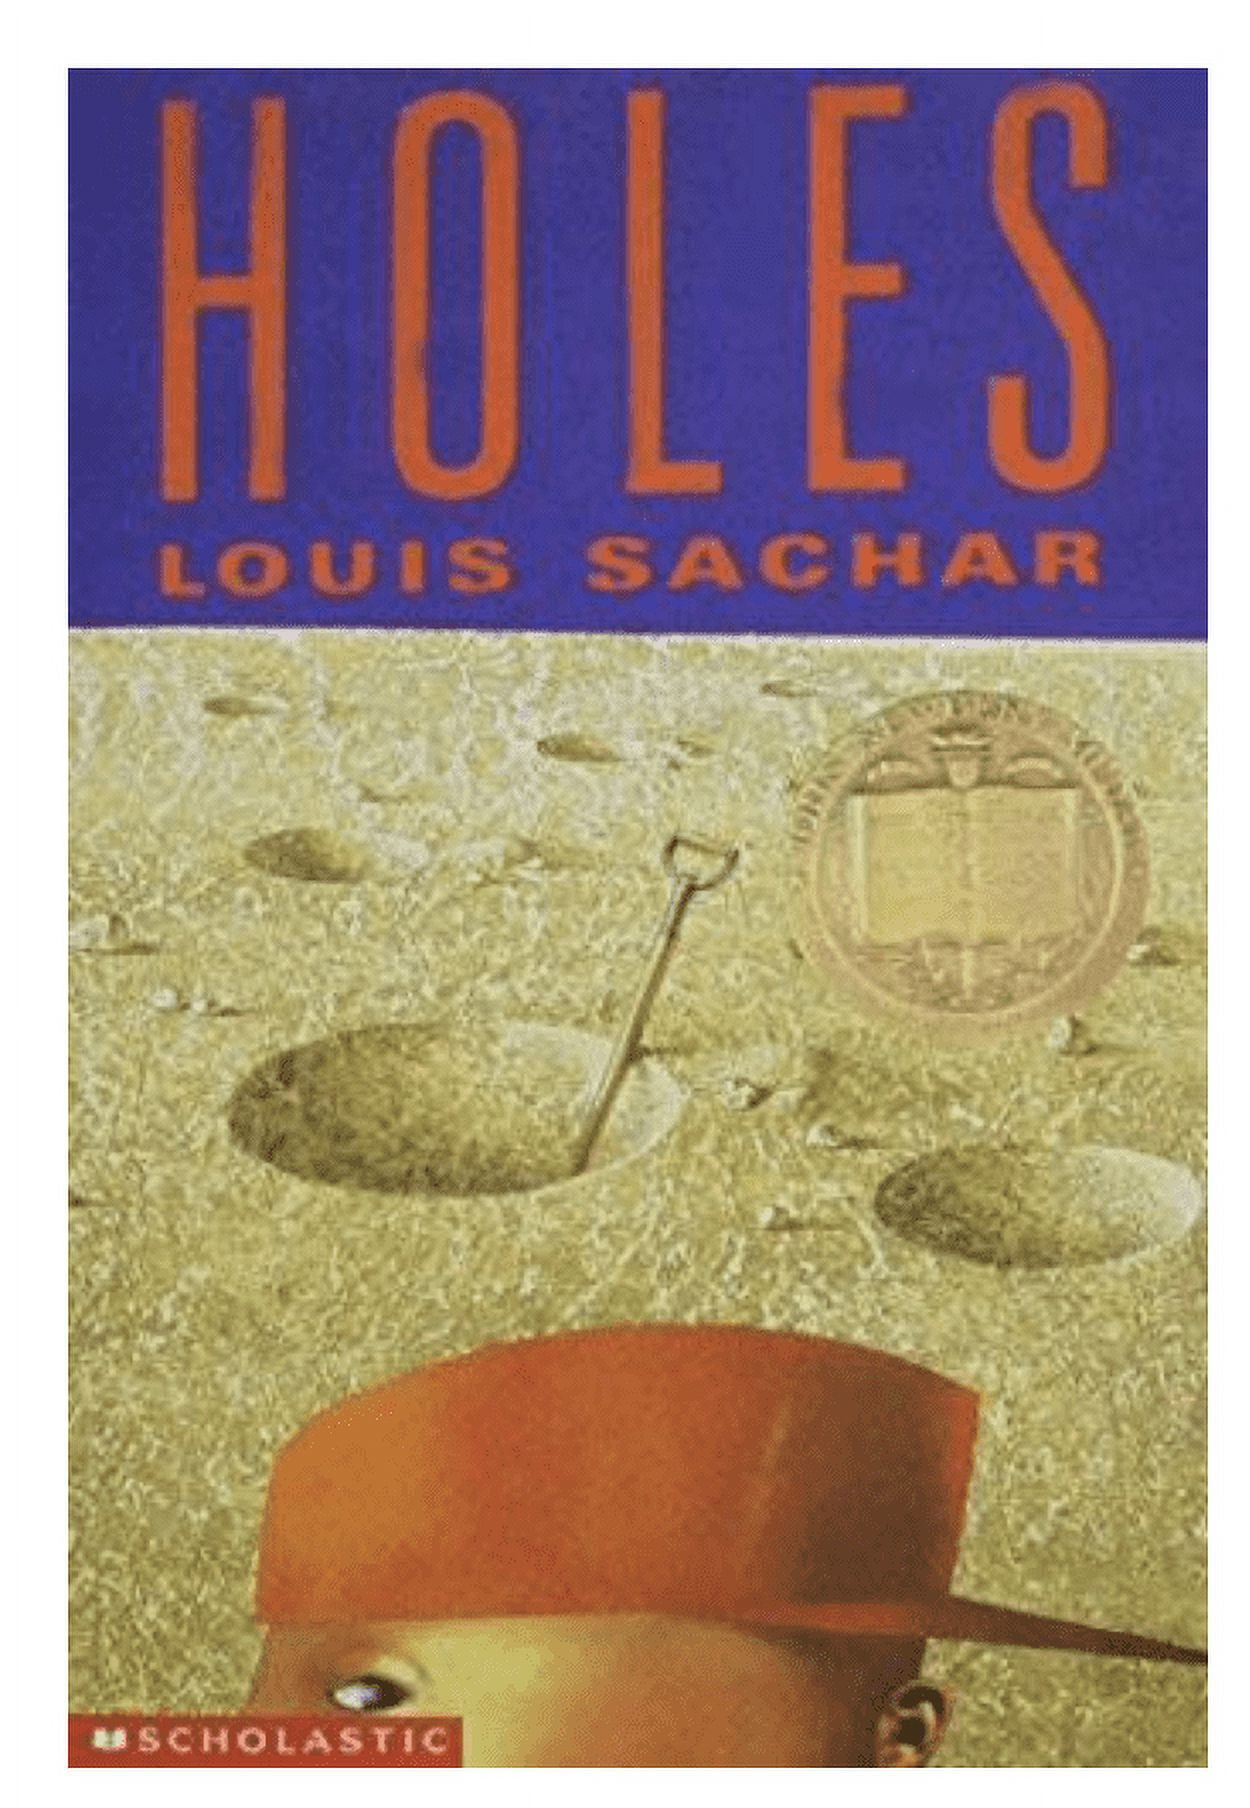 Holes by Louis Sachar: 9780440414803 | : Books